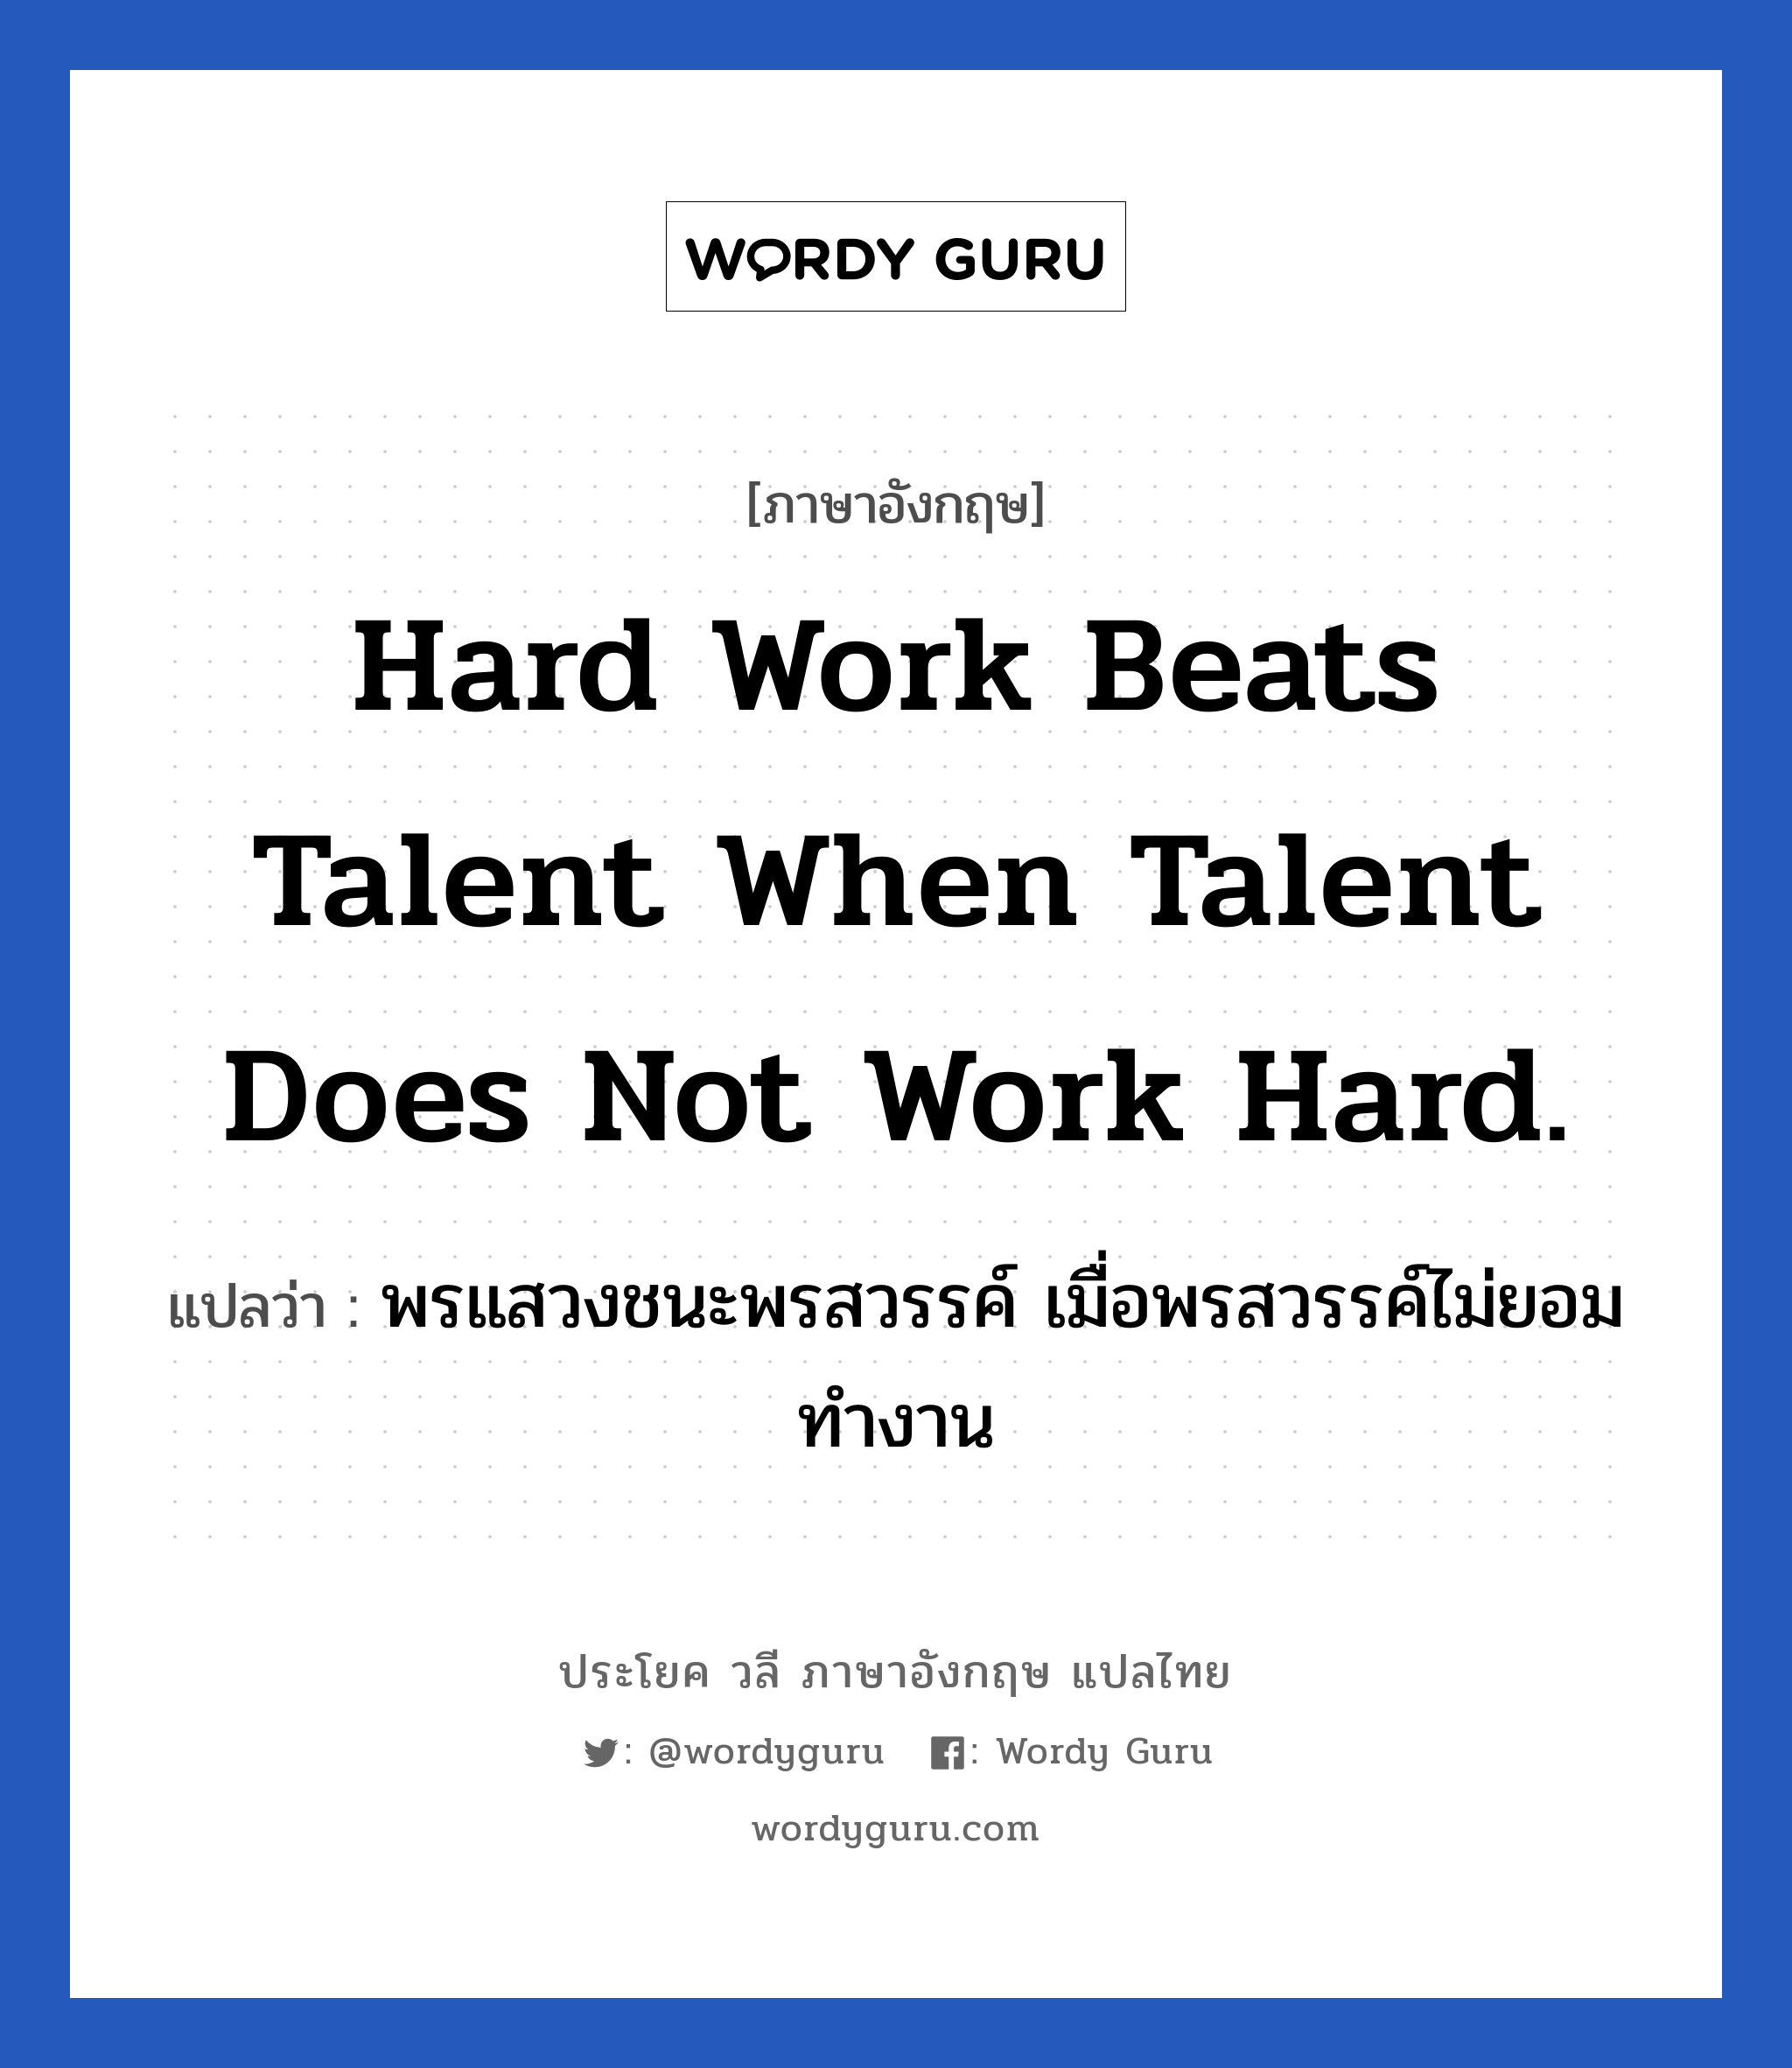 พรแสวงชนะพรสวรรค์ เมื่อพรสวรรค์ไม่ยอมทำงาน ภาษาอังกฤษ?, วลีภาษาอังกฤษ พรแสวงชนะพรสวรรค์ เมื่อพรสวรรค์ไม่ยอมทำงาน แปลว่า Hard work beats talent when talent does not work hard. หมวด ในที่ทำงาน